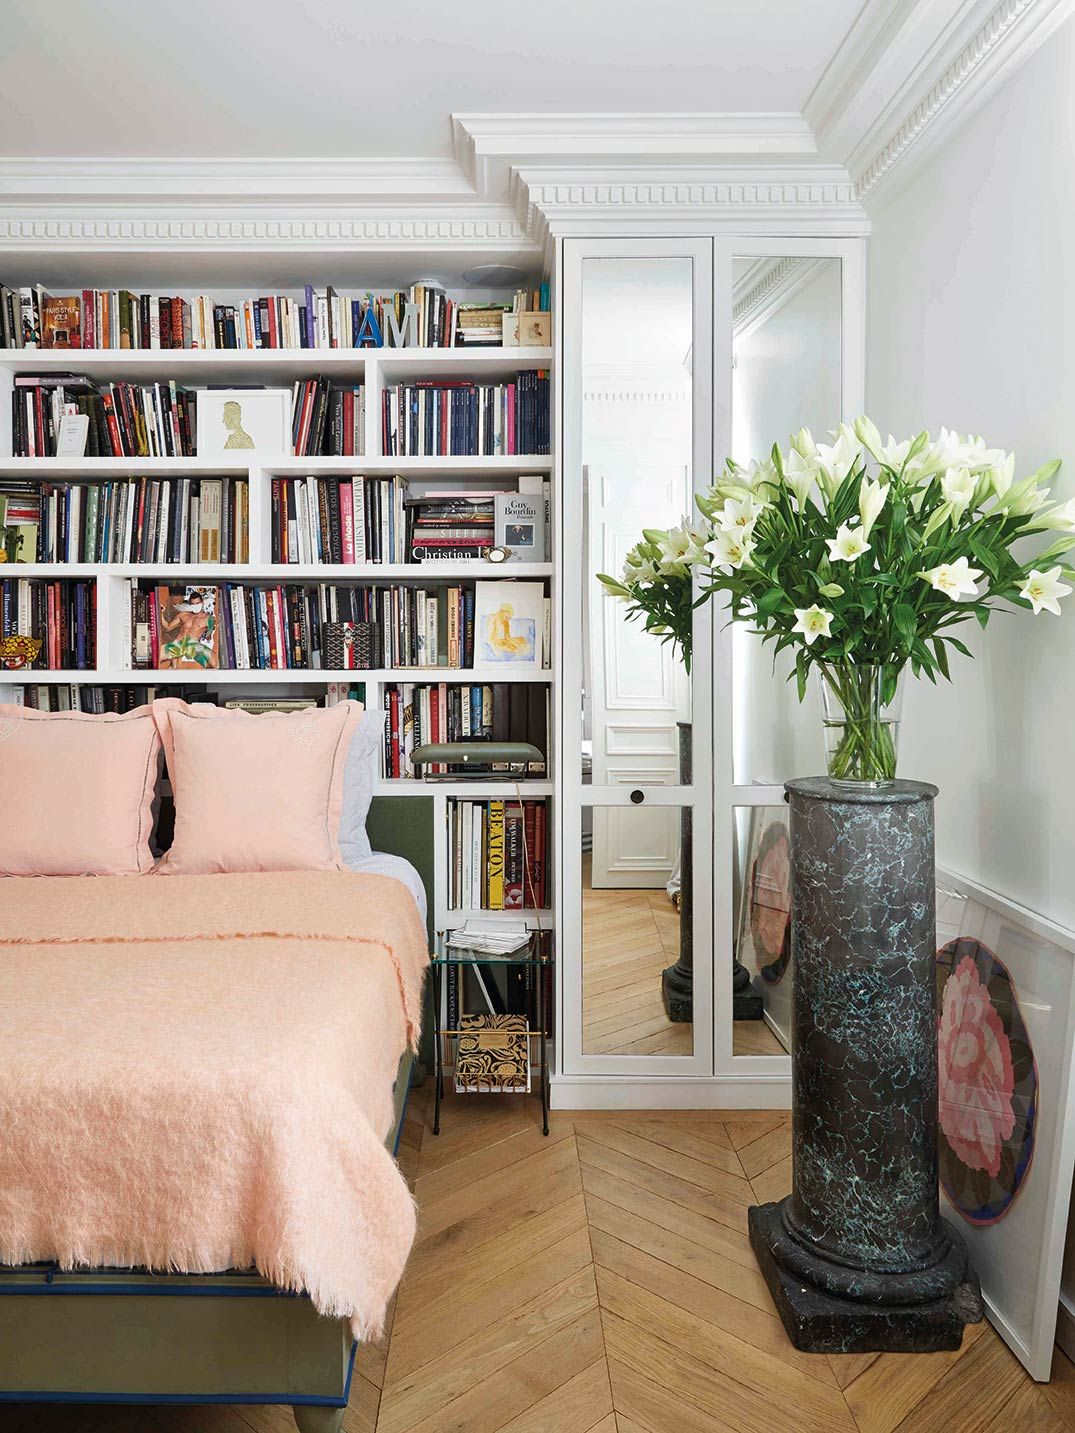 Cómo decorar una habitación al estilo clásico - Blog de decoración  MobiliarioClasico